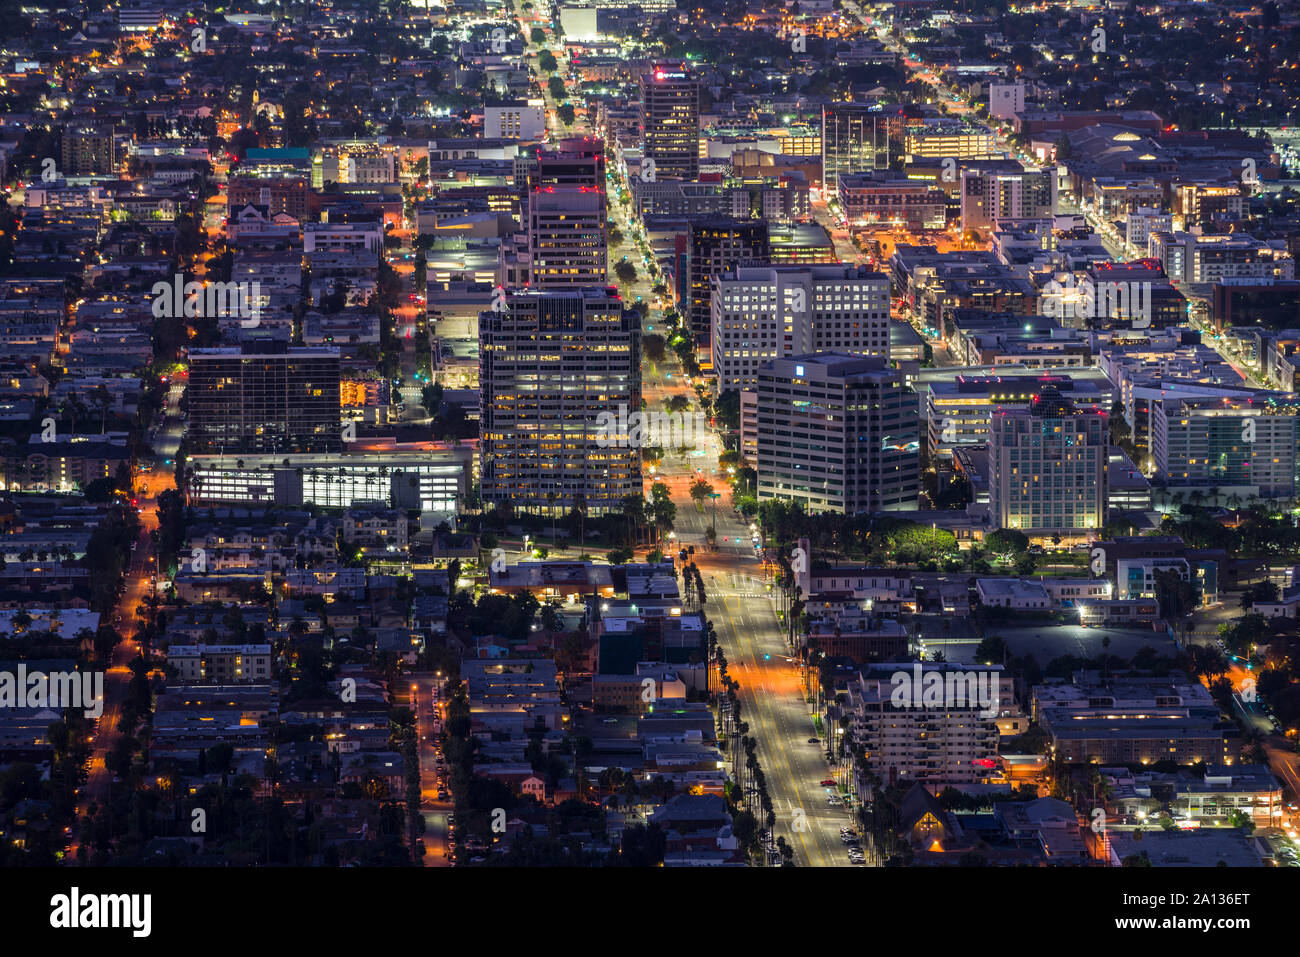 Glendale, California, Stati Uniti d'America - 22 Settembre 2019: notte vista collina di Brand Blvd e il centro cittadino di Glendale vicino a Los Angeles e Burbank. Foto Stock